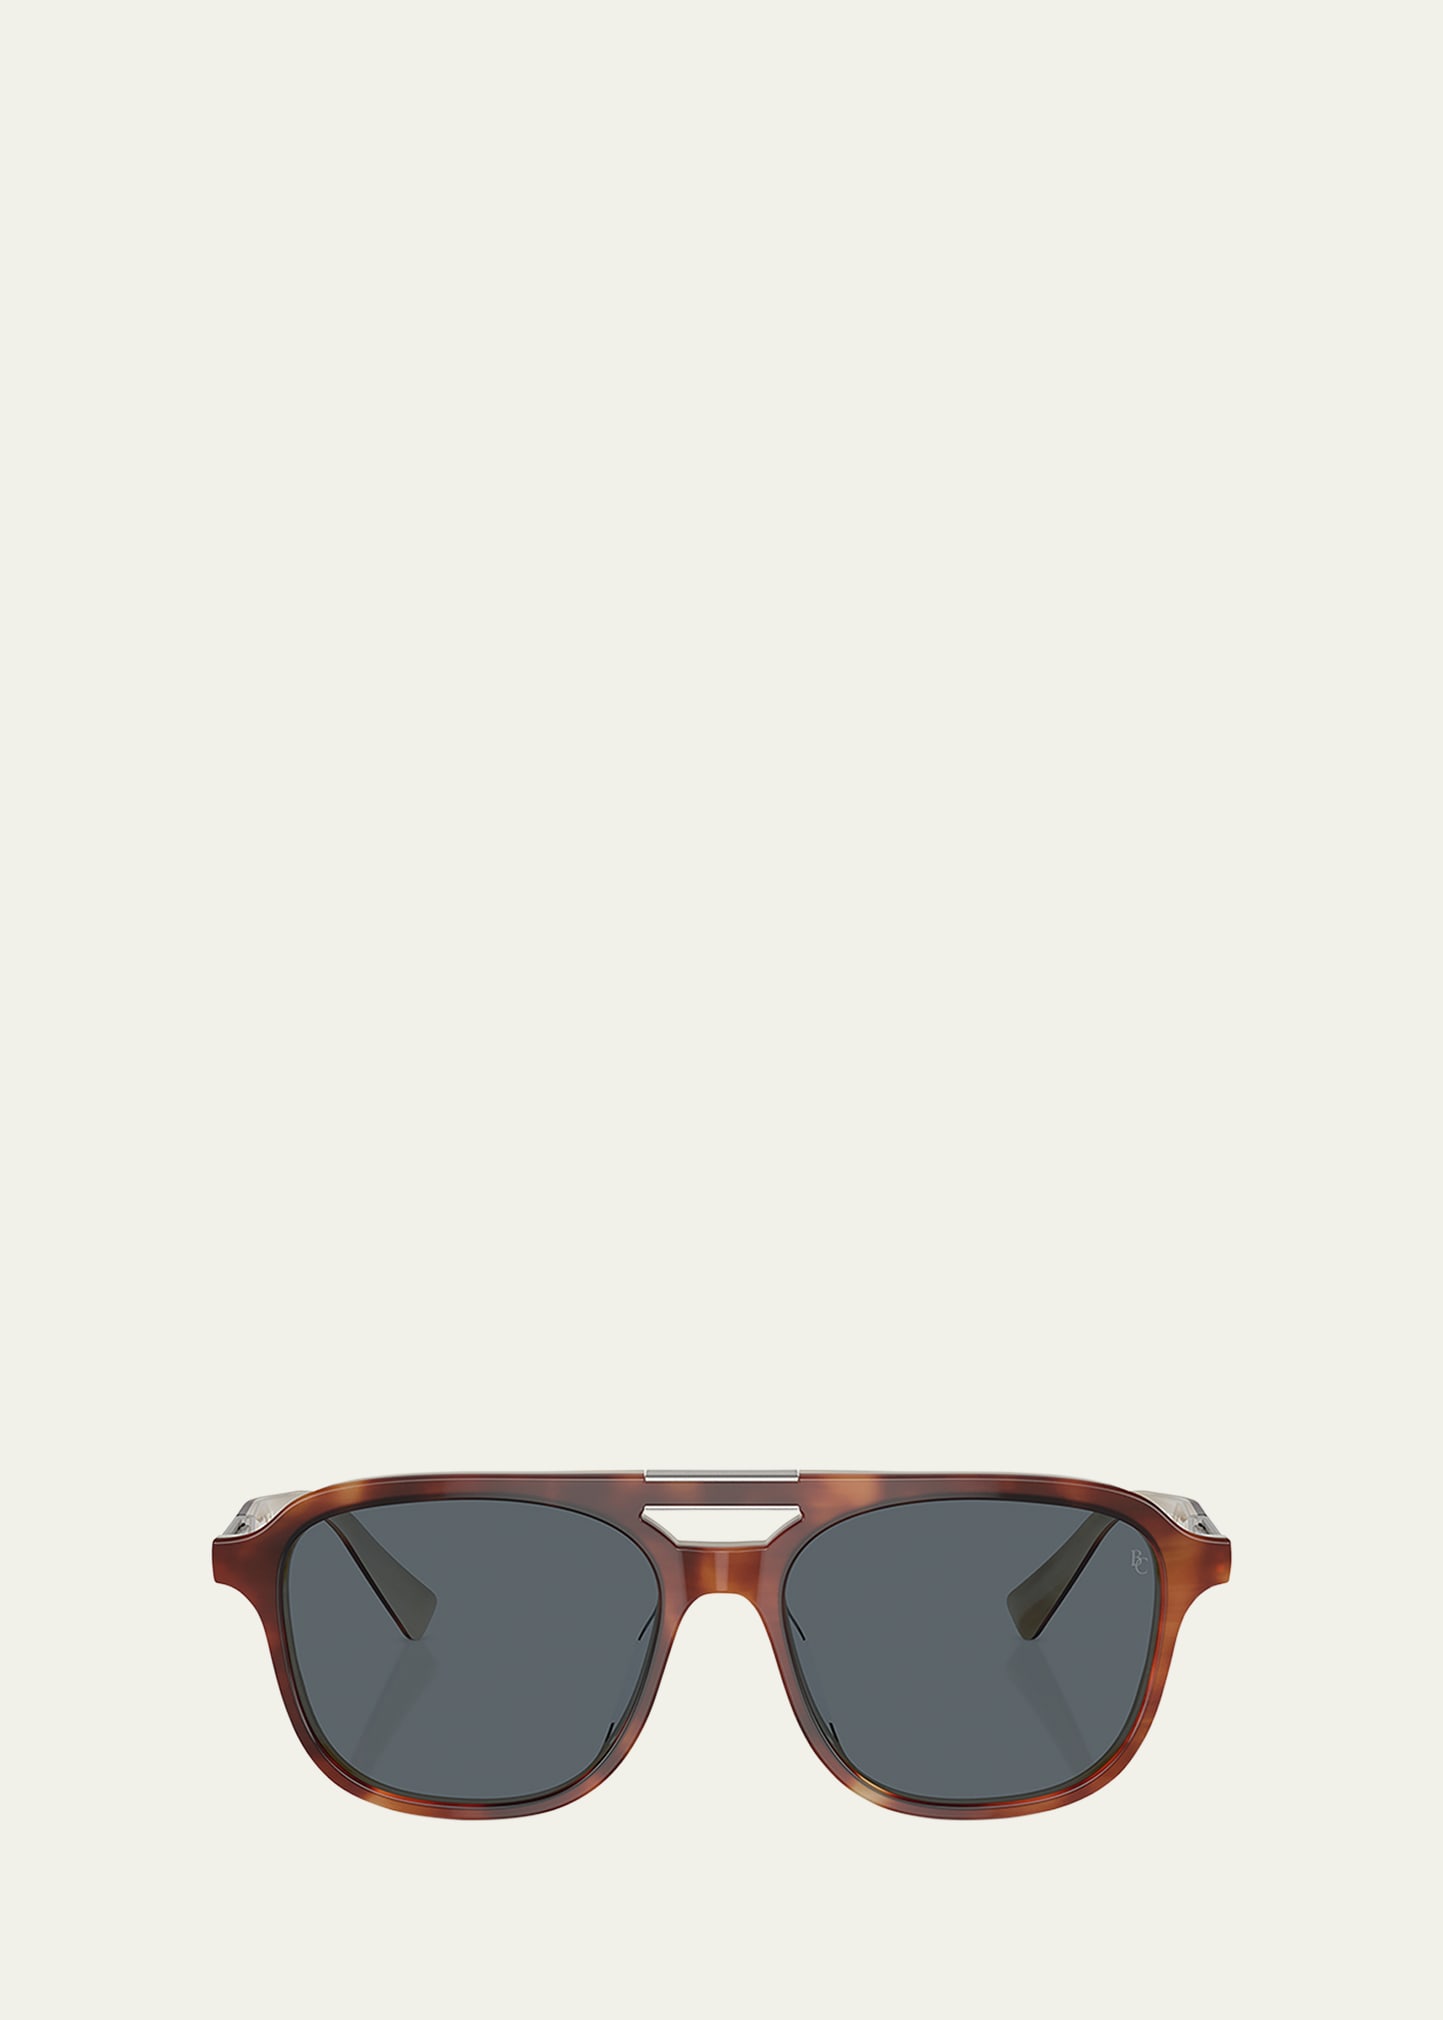 Men's bc4001s Acetate Square Sunglasses